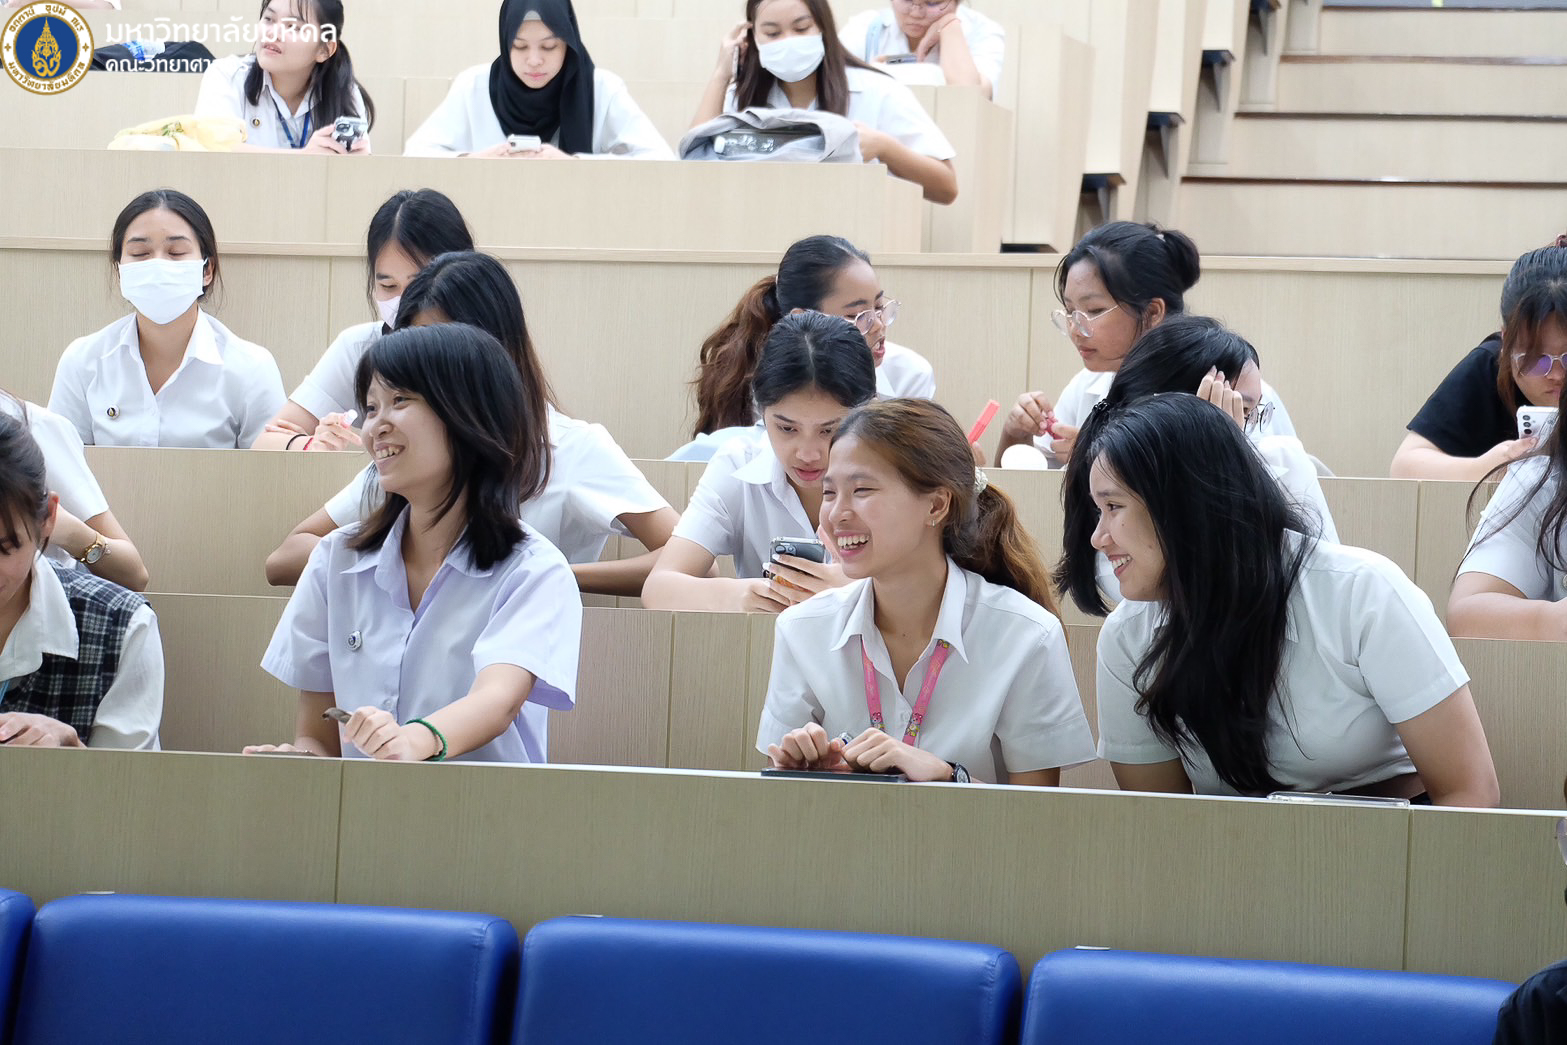 คณะวิทย์ ม.มหิดล จัดกิจกรรมชี้แจงสาขาวิชาปีการศึกษา 2566 เปิดมุมมองการเรียน เส้นทางอาชีพ พร้อมแชร์ประสบการณ์รุ่นพี่ 6 สาขา ป.ตรี หลักสูตรไทย ให้แก่นักศึกษาชั้นปีที่ 1